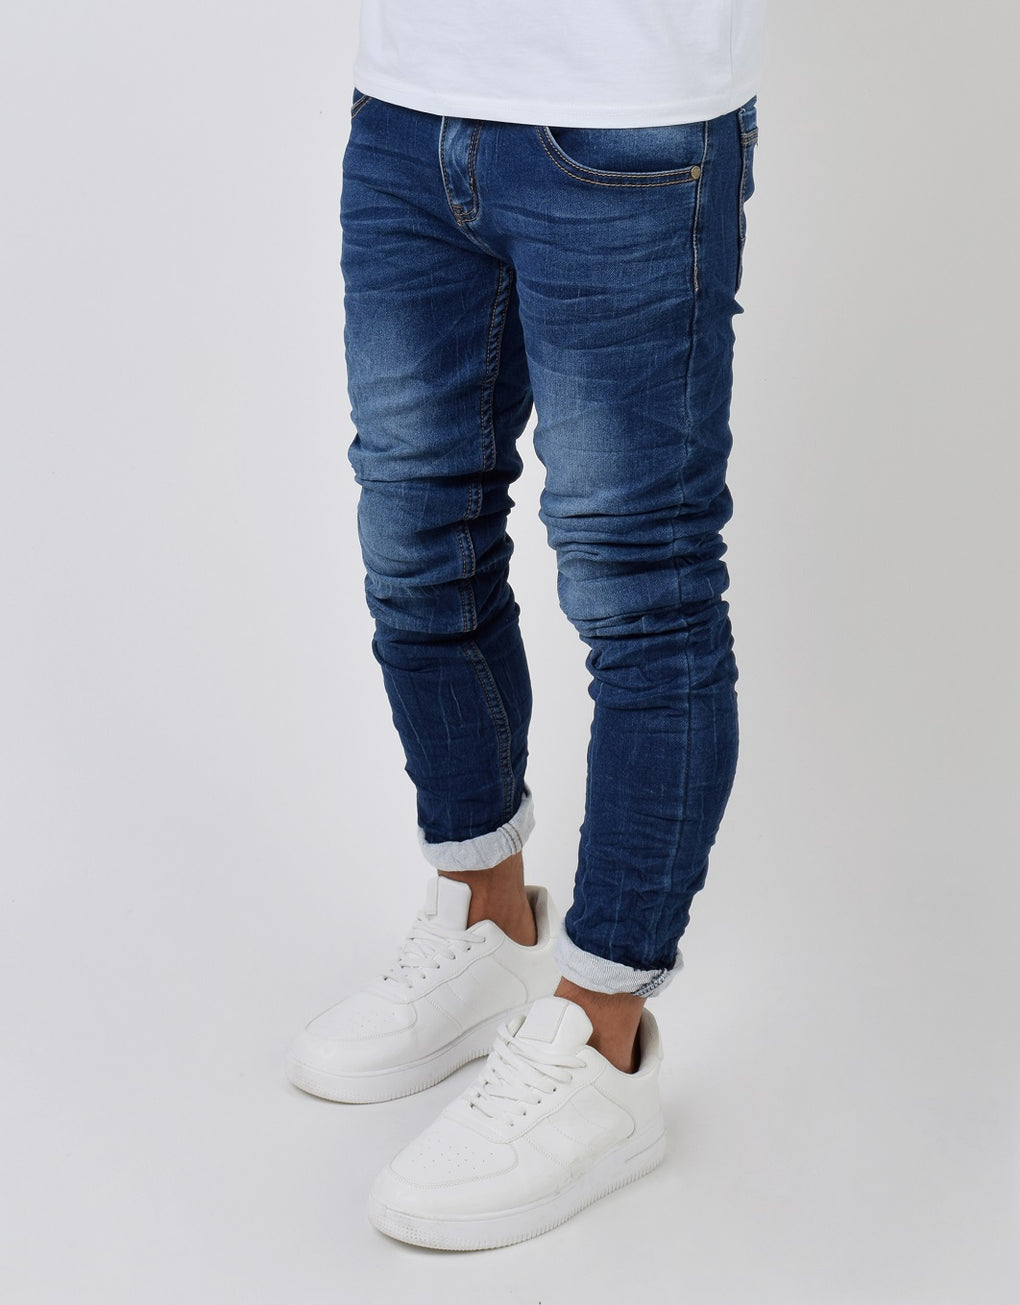 Jeans - MEGASTORES